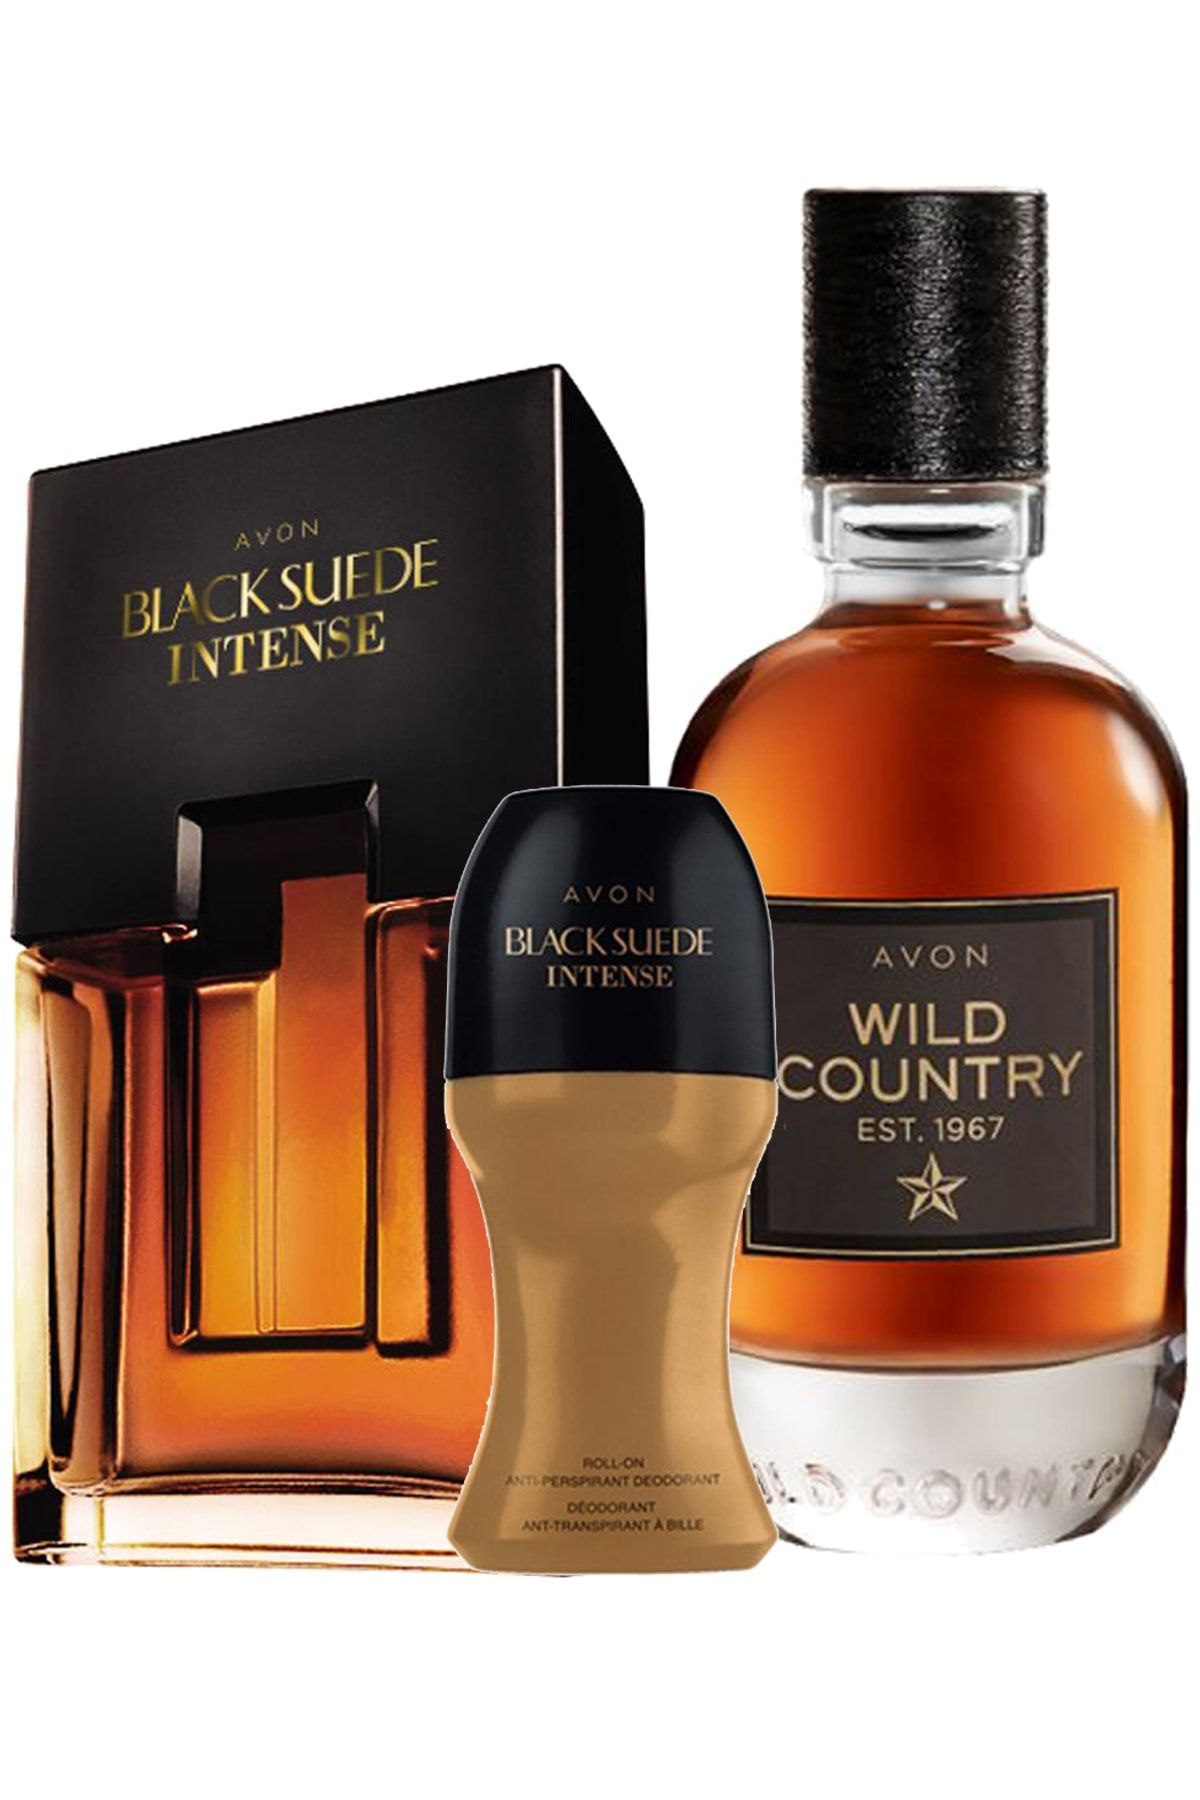 Avon Wild Country Black Suede Intense Erkek Parfüm Ve Black Suede Intense Rollon Paketi